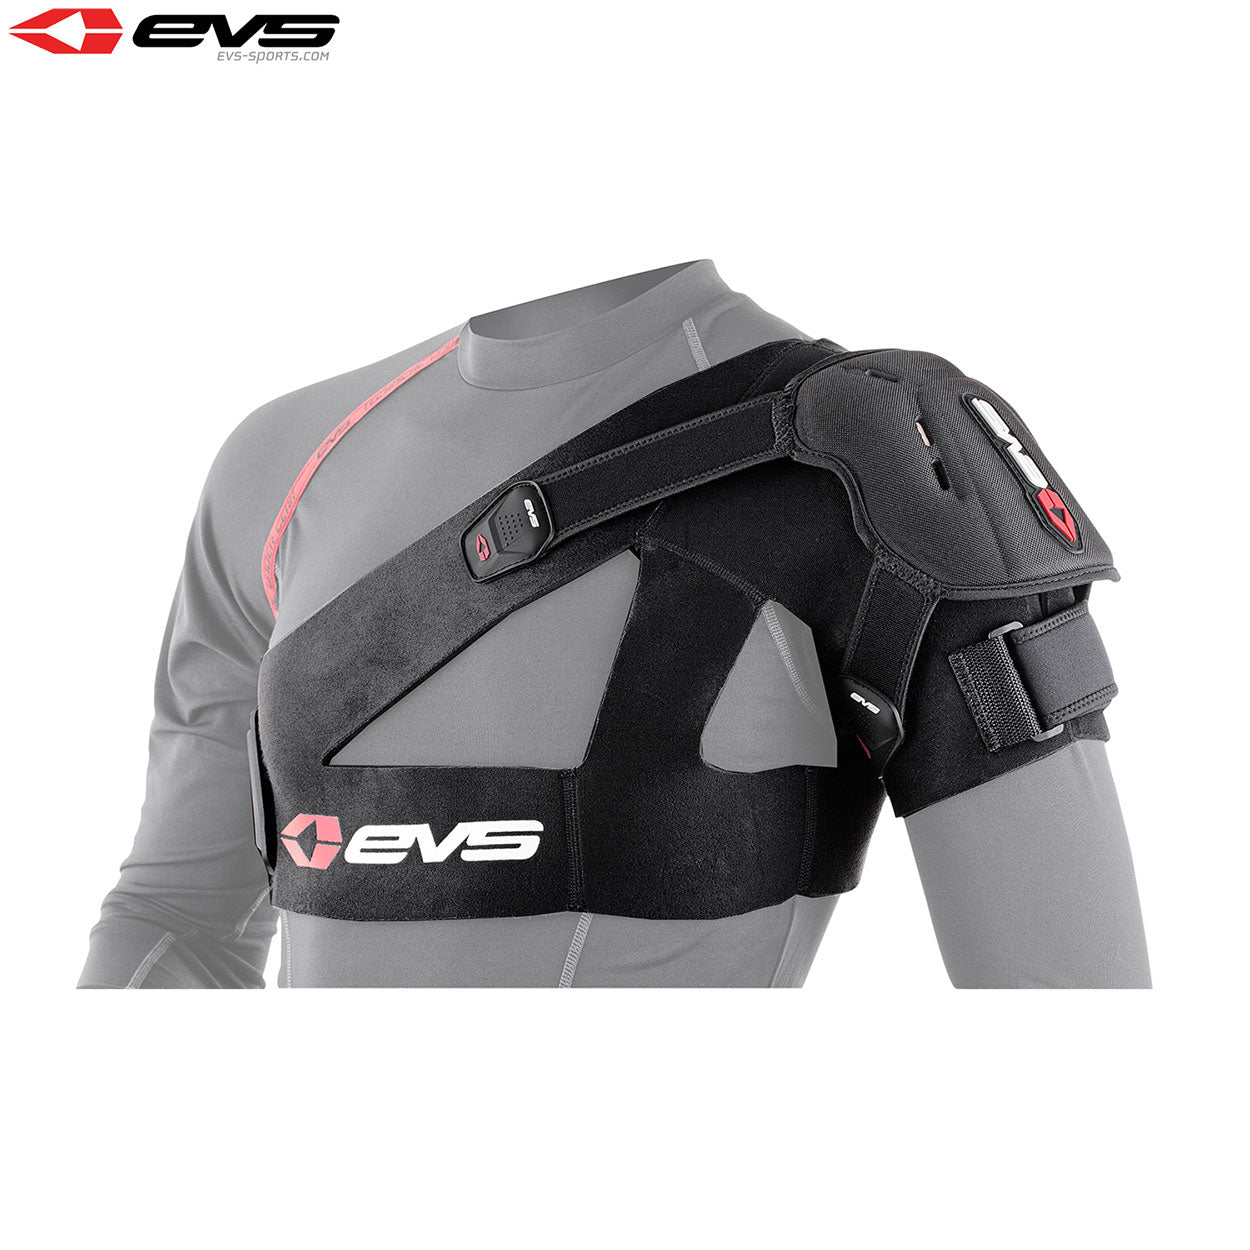 EVS SB04 Shoulder Stabiliser Inc Protection Cup Adult (Black) Size XLarge - XL / Black - EVS